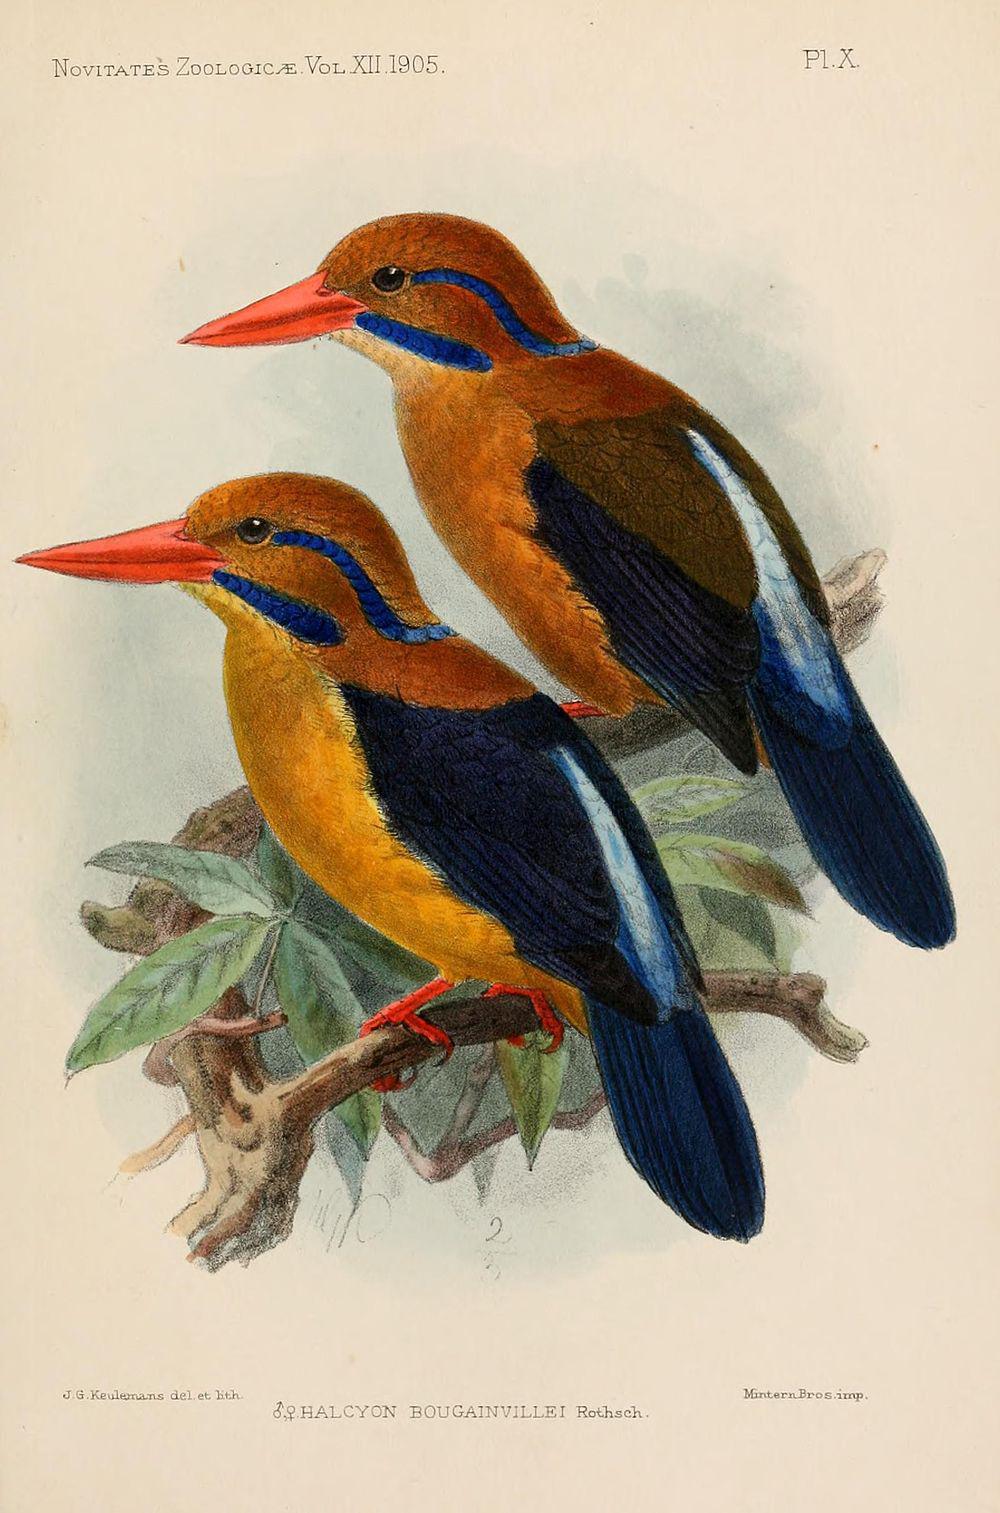 须翡翠 / Moustached Kingfisher / Actenoides bougainvillei